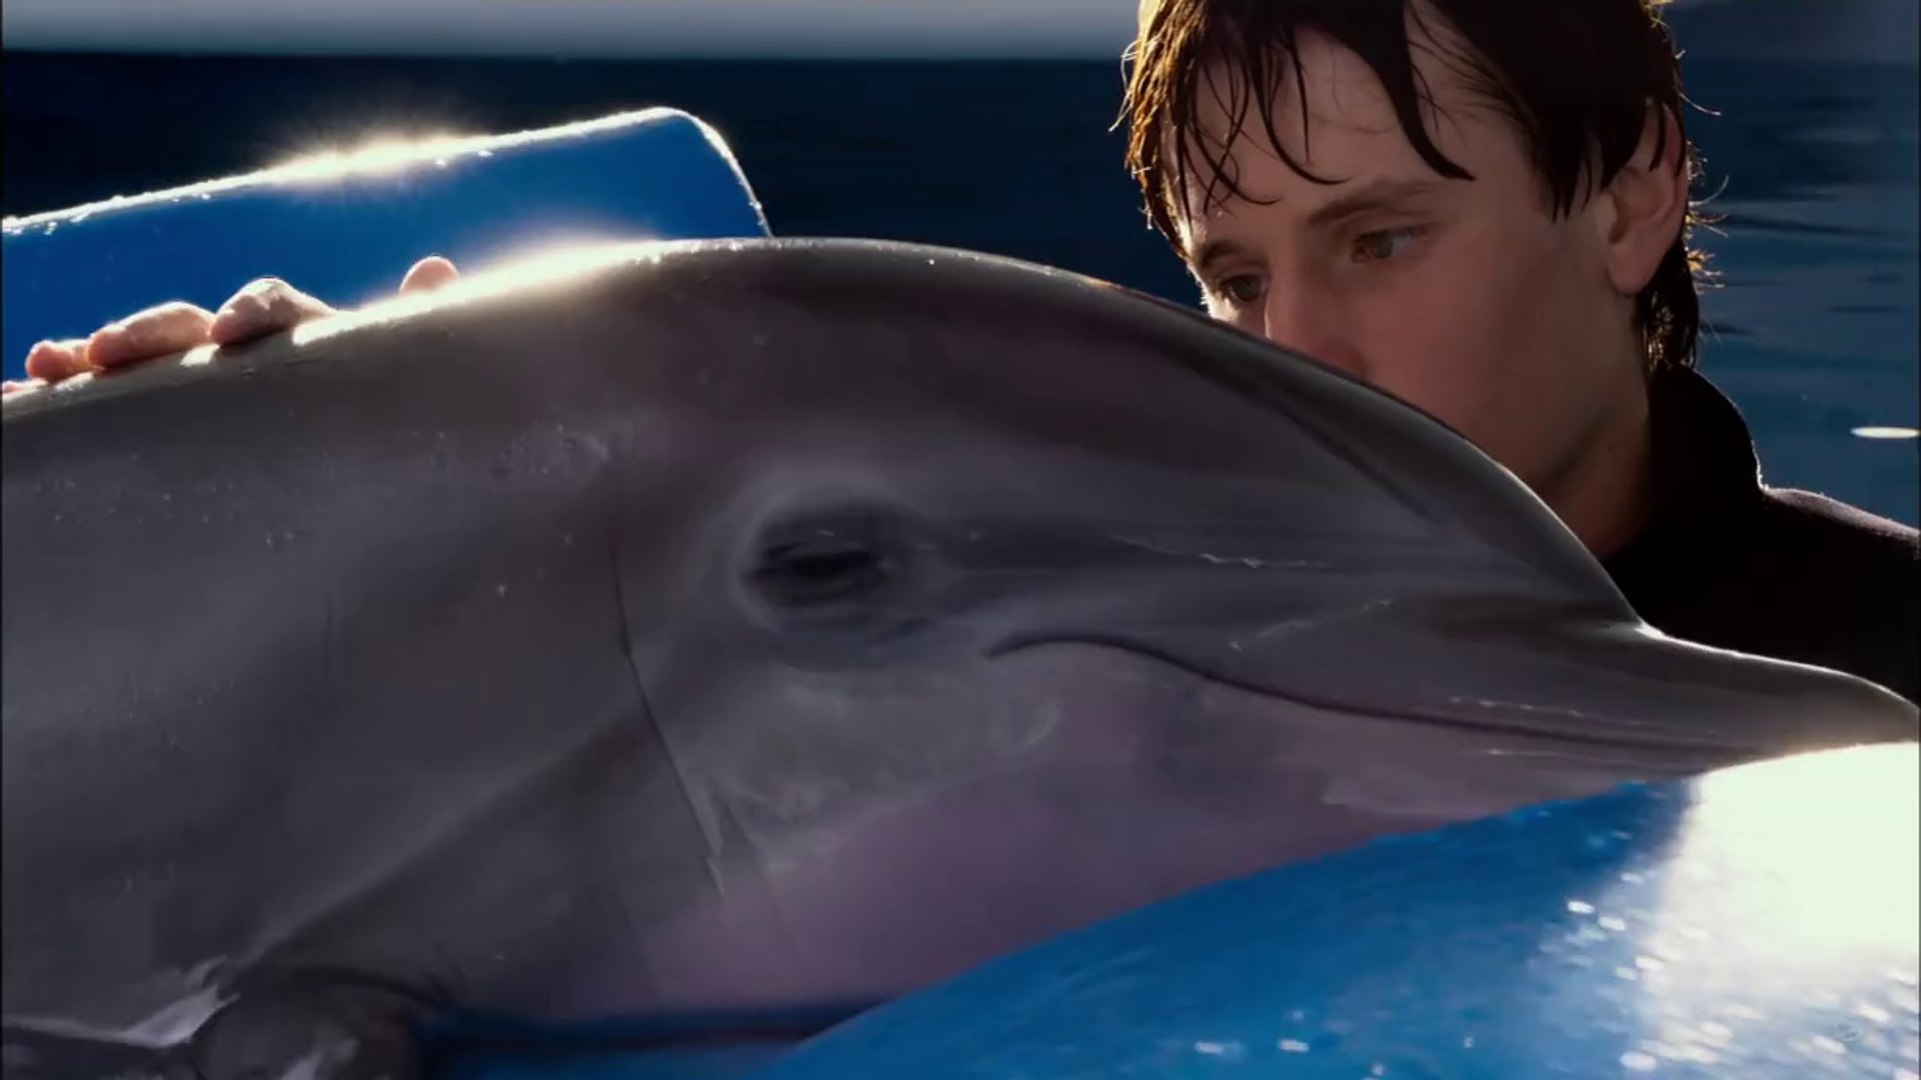 Дельфин 2 группа. Дельфин пятерка. Дельфин Винтер фото. Джон Каннигам Лилли-человек и Дельфин.